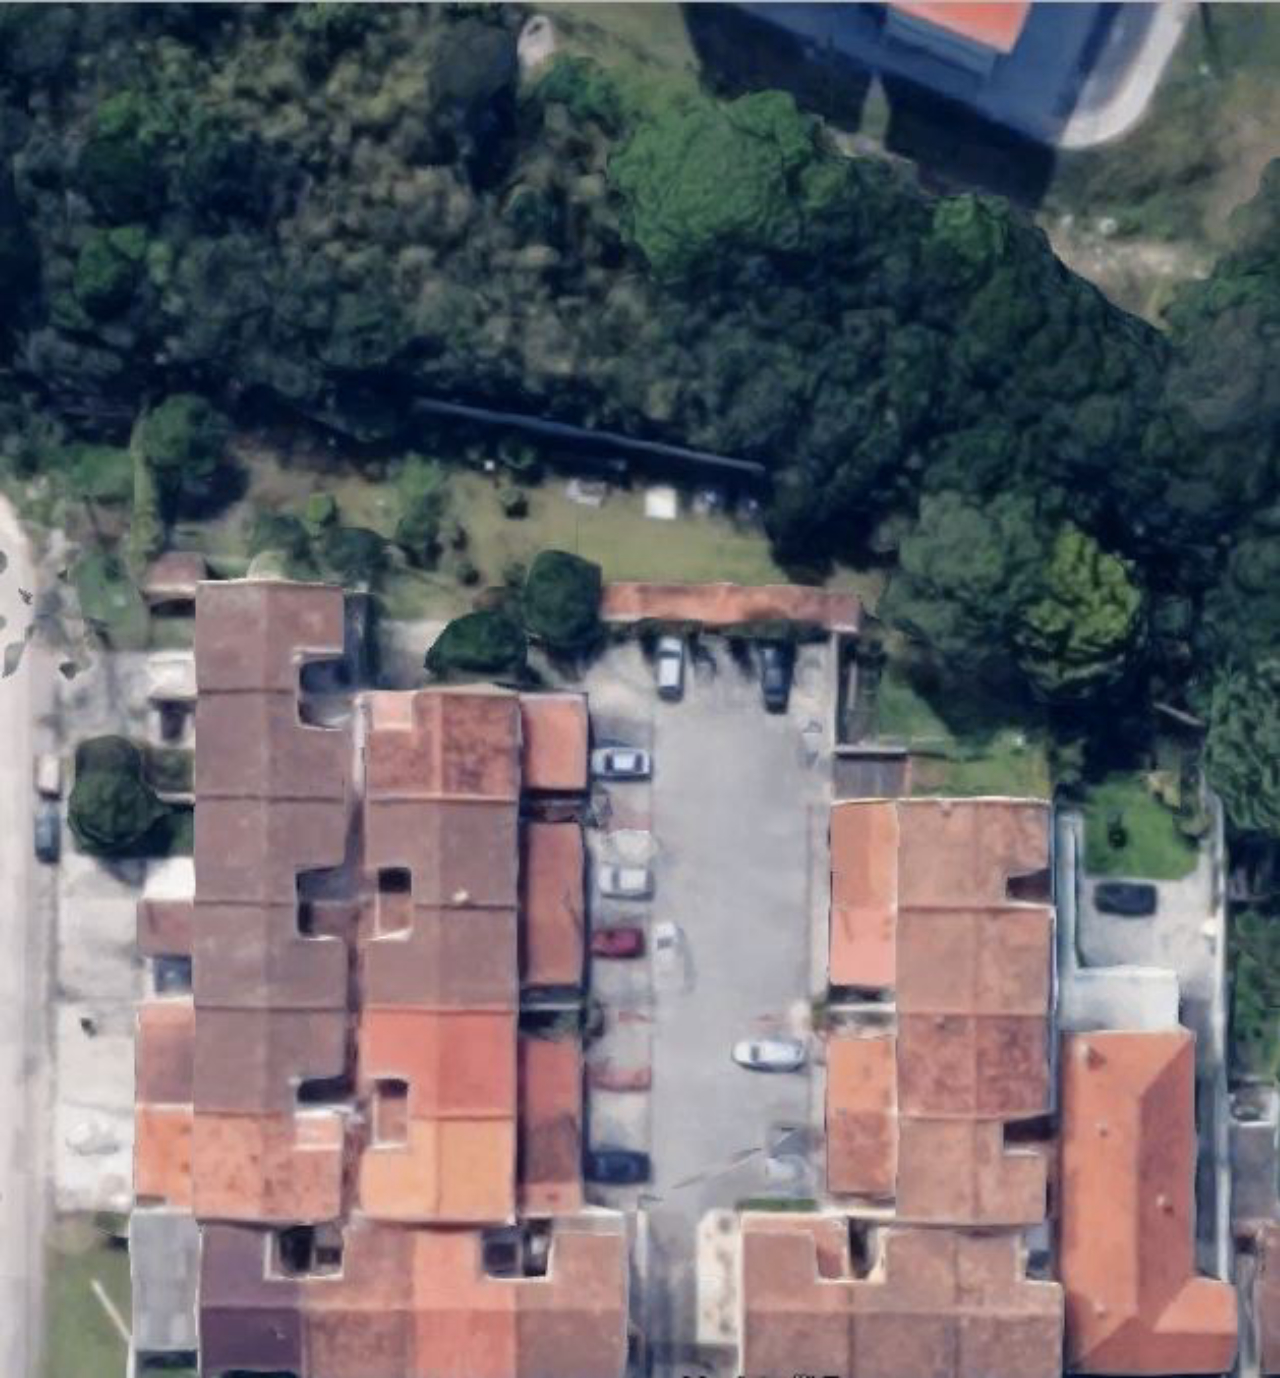 Vista aérea do Condomínio Ilha de Minorca com trecho da mata ciliar do Rio da Base. Imagem: Google Maps